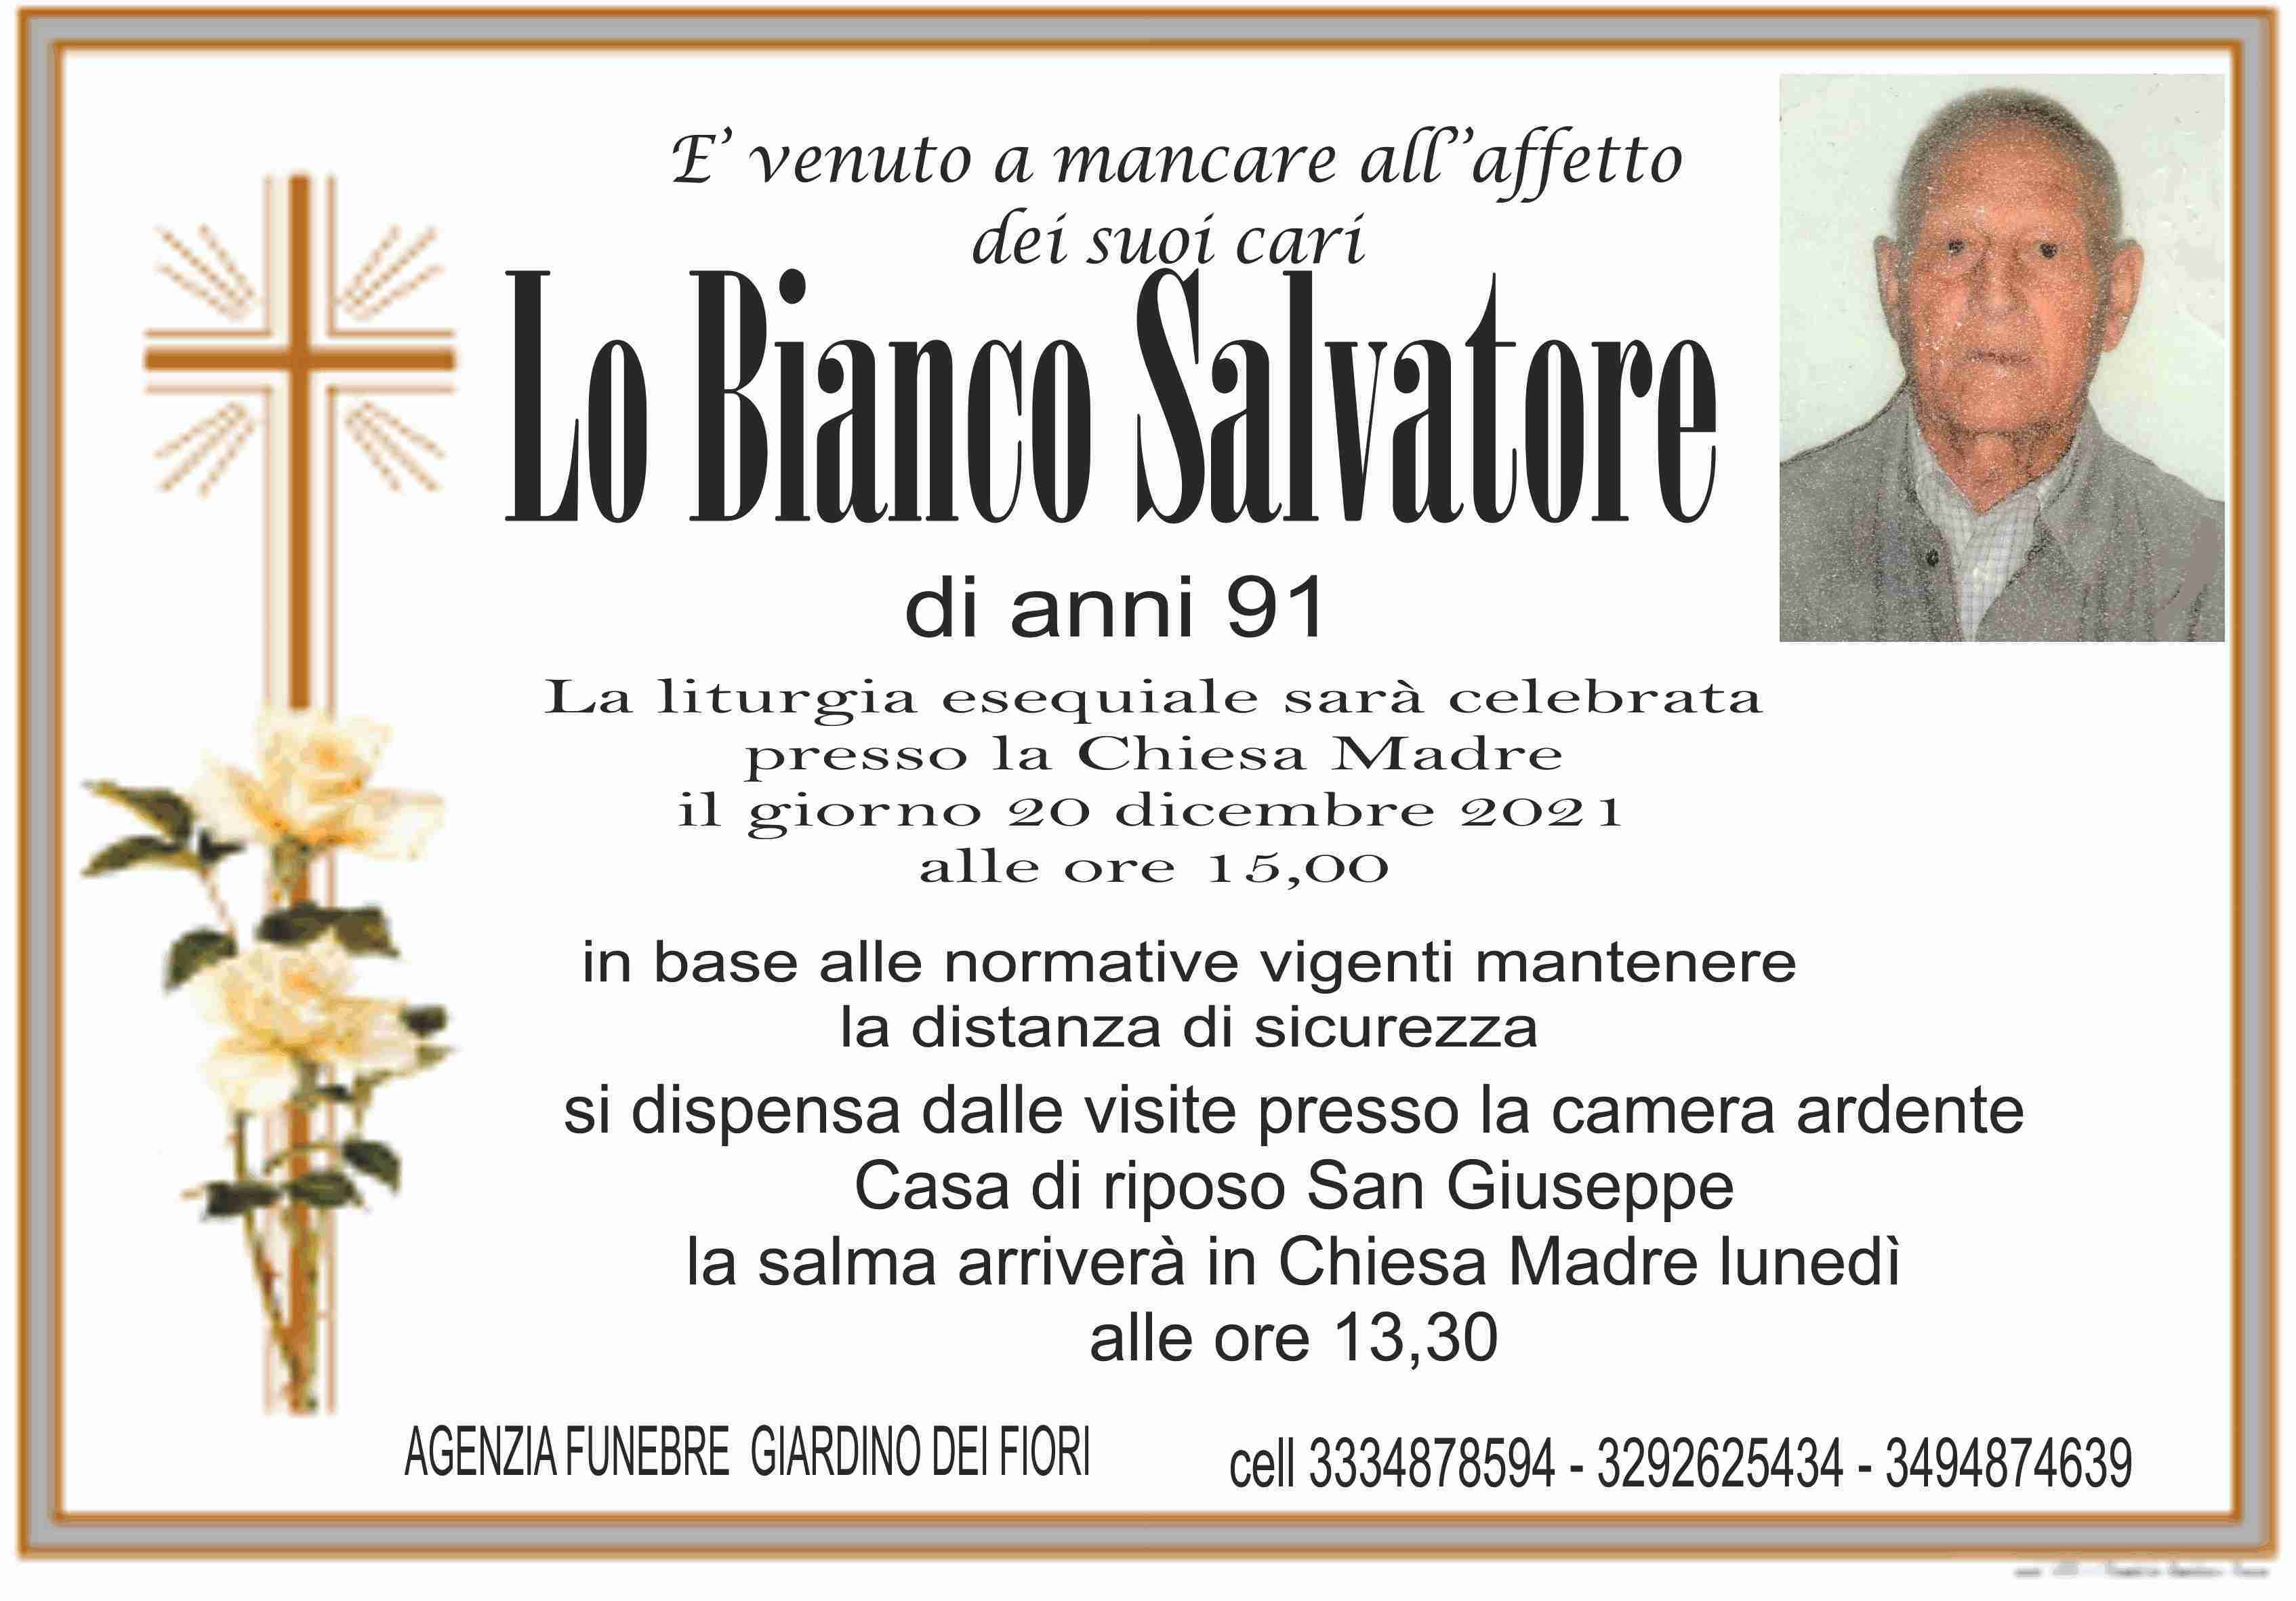 Salvatore Lo Bianco